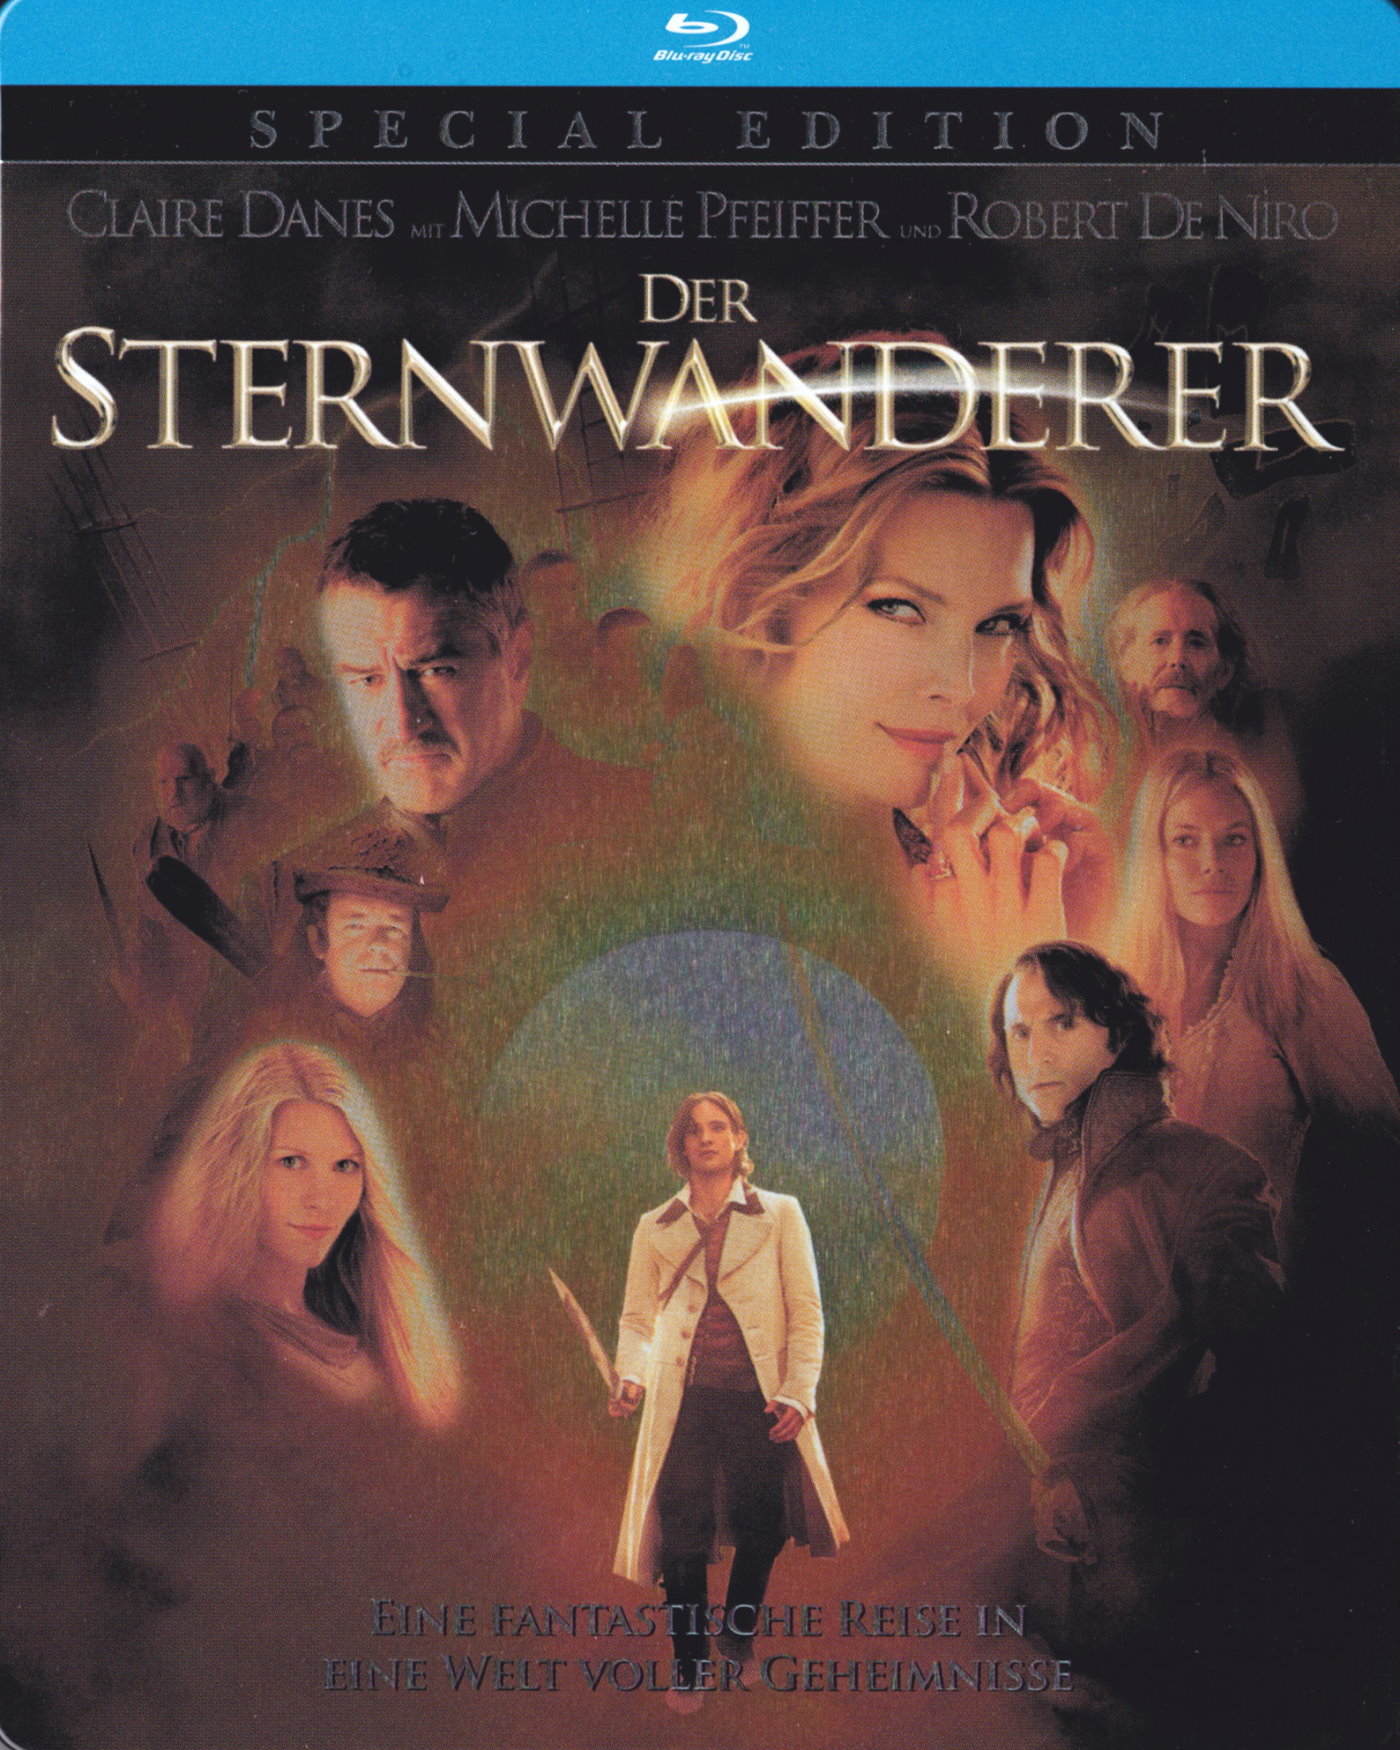 Cover - Der Sternwanderer.jpg